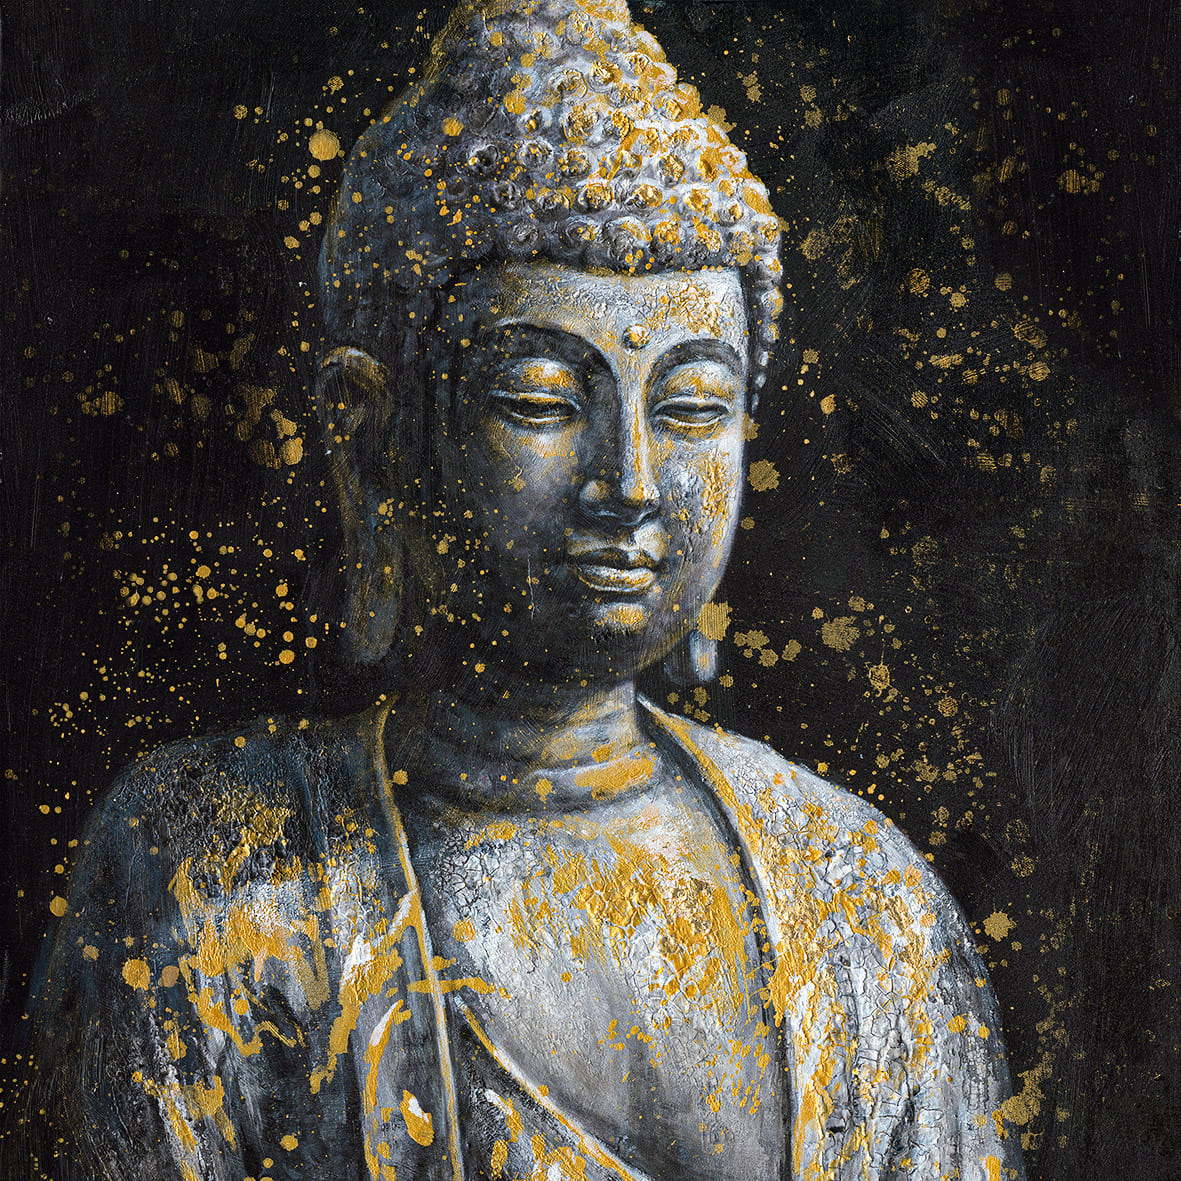 Ölbild Buddha auf schwarzem Grund100x100